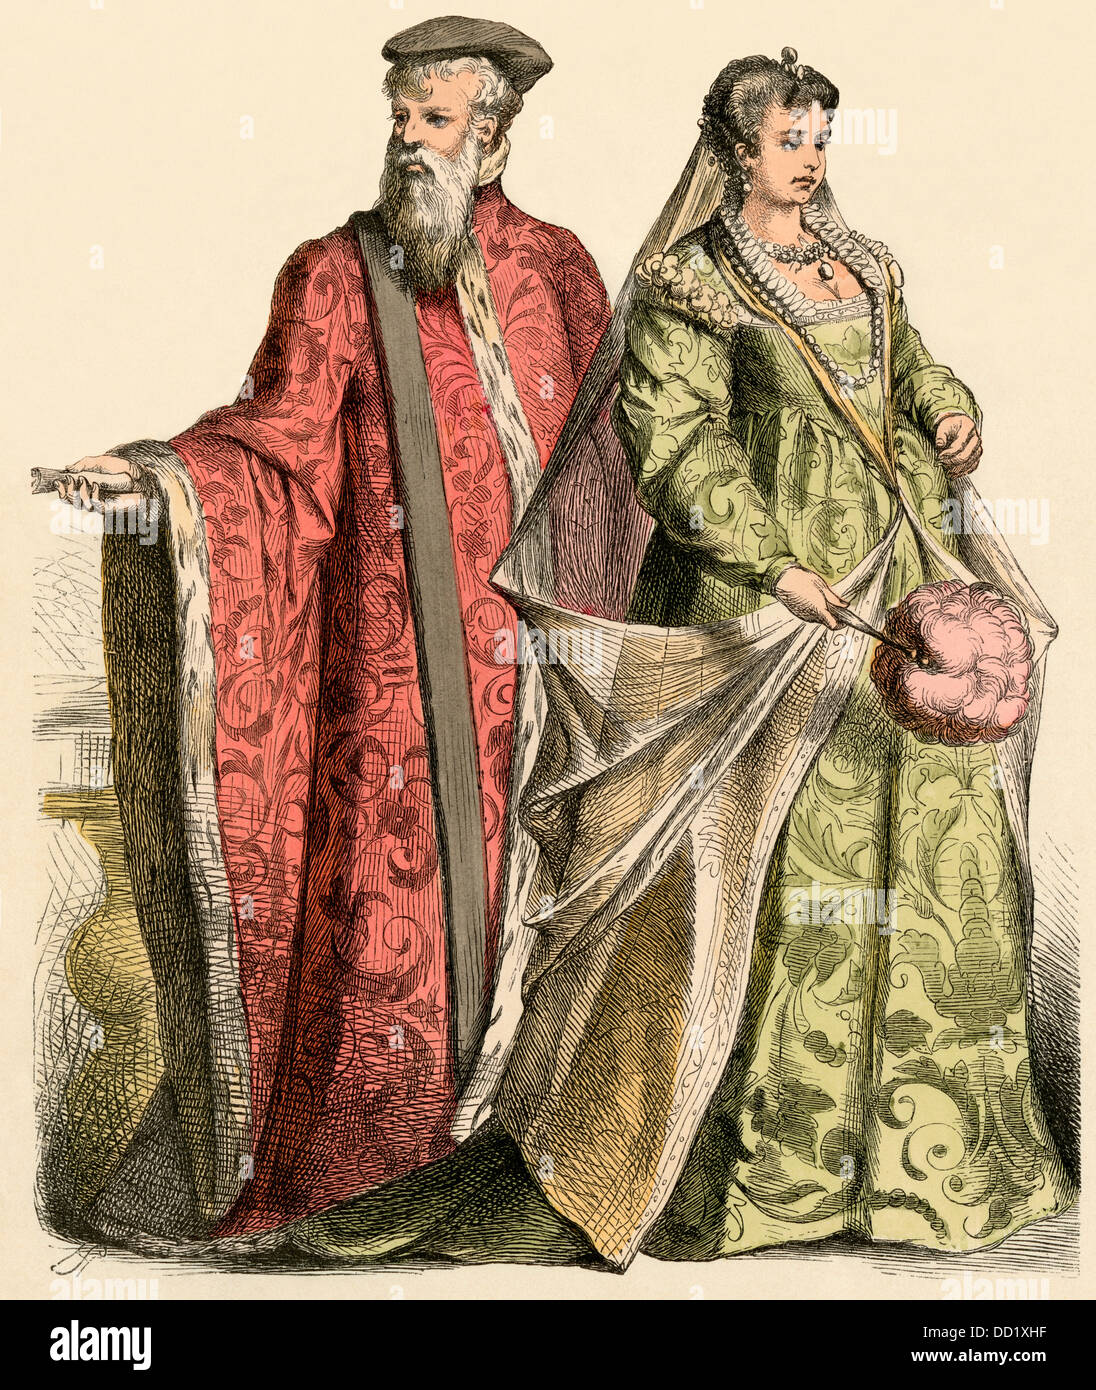 Le sénateur et dame de Venise, 1500. Impression couleur à la main Banque D'Images